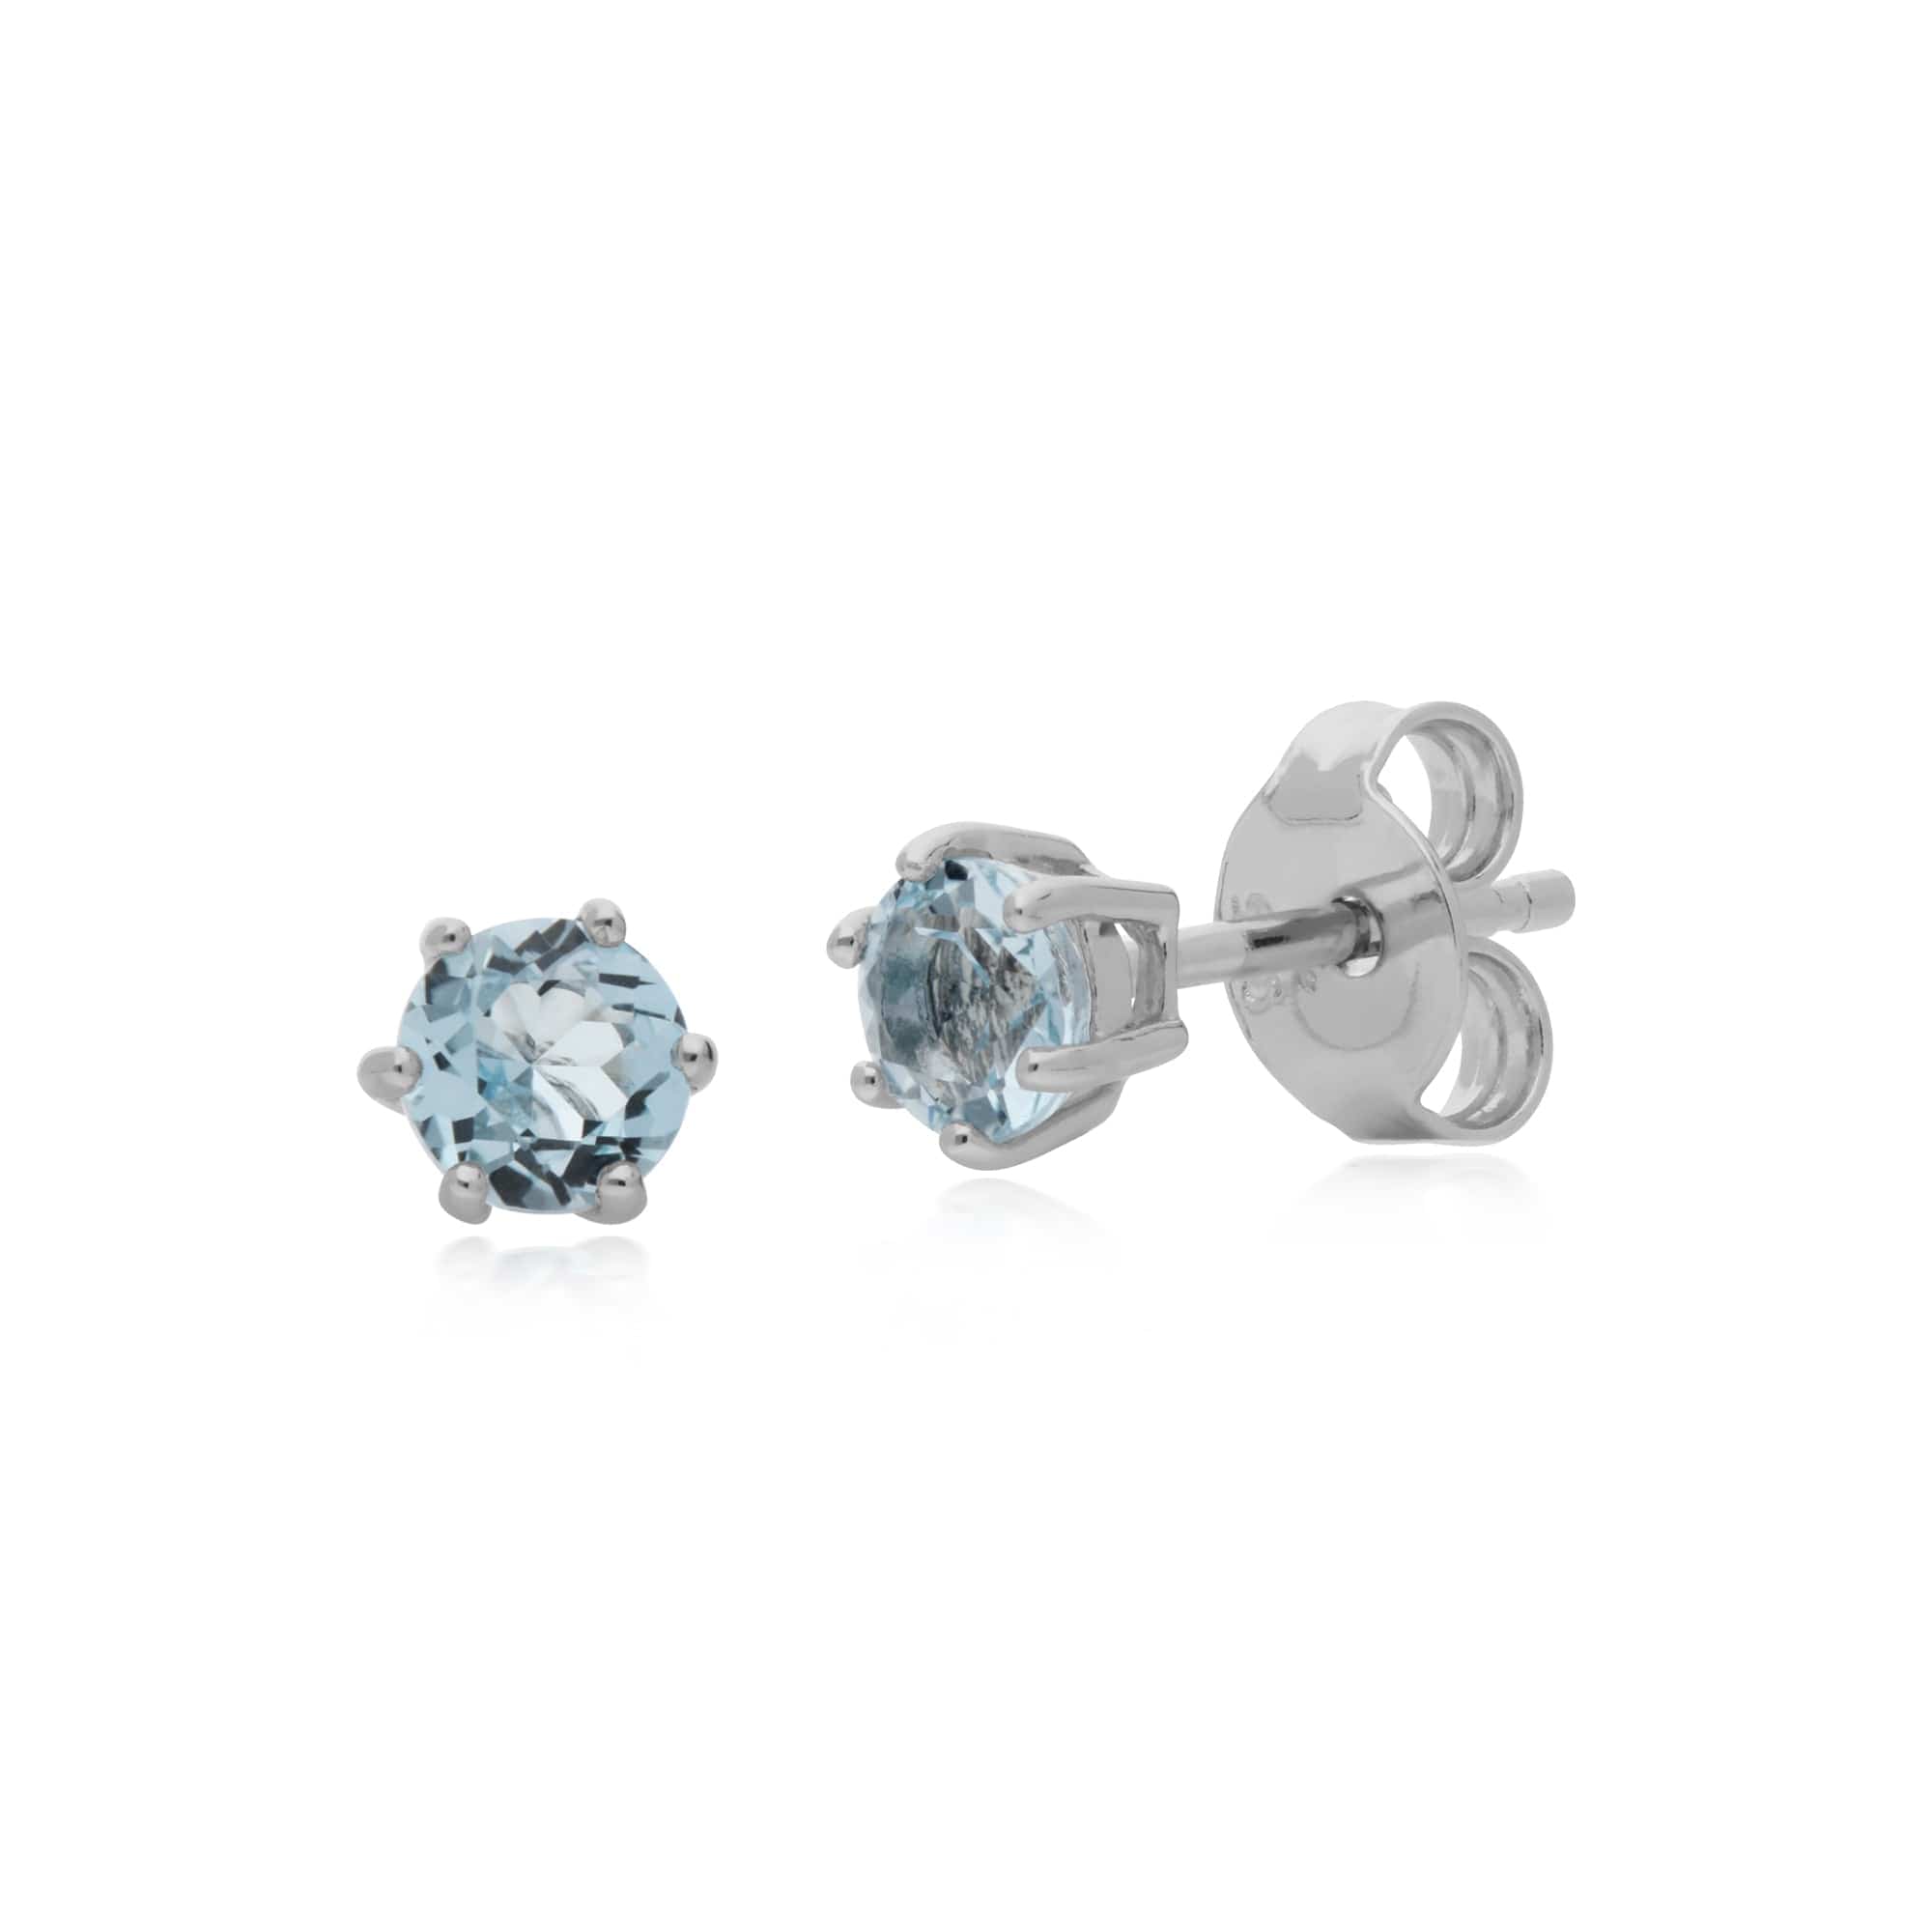 270E025101925-270L010801925 Classic Round Blue Topaz Stud Earrings & Bracelet Set in 925 Sterling Silver 2